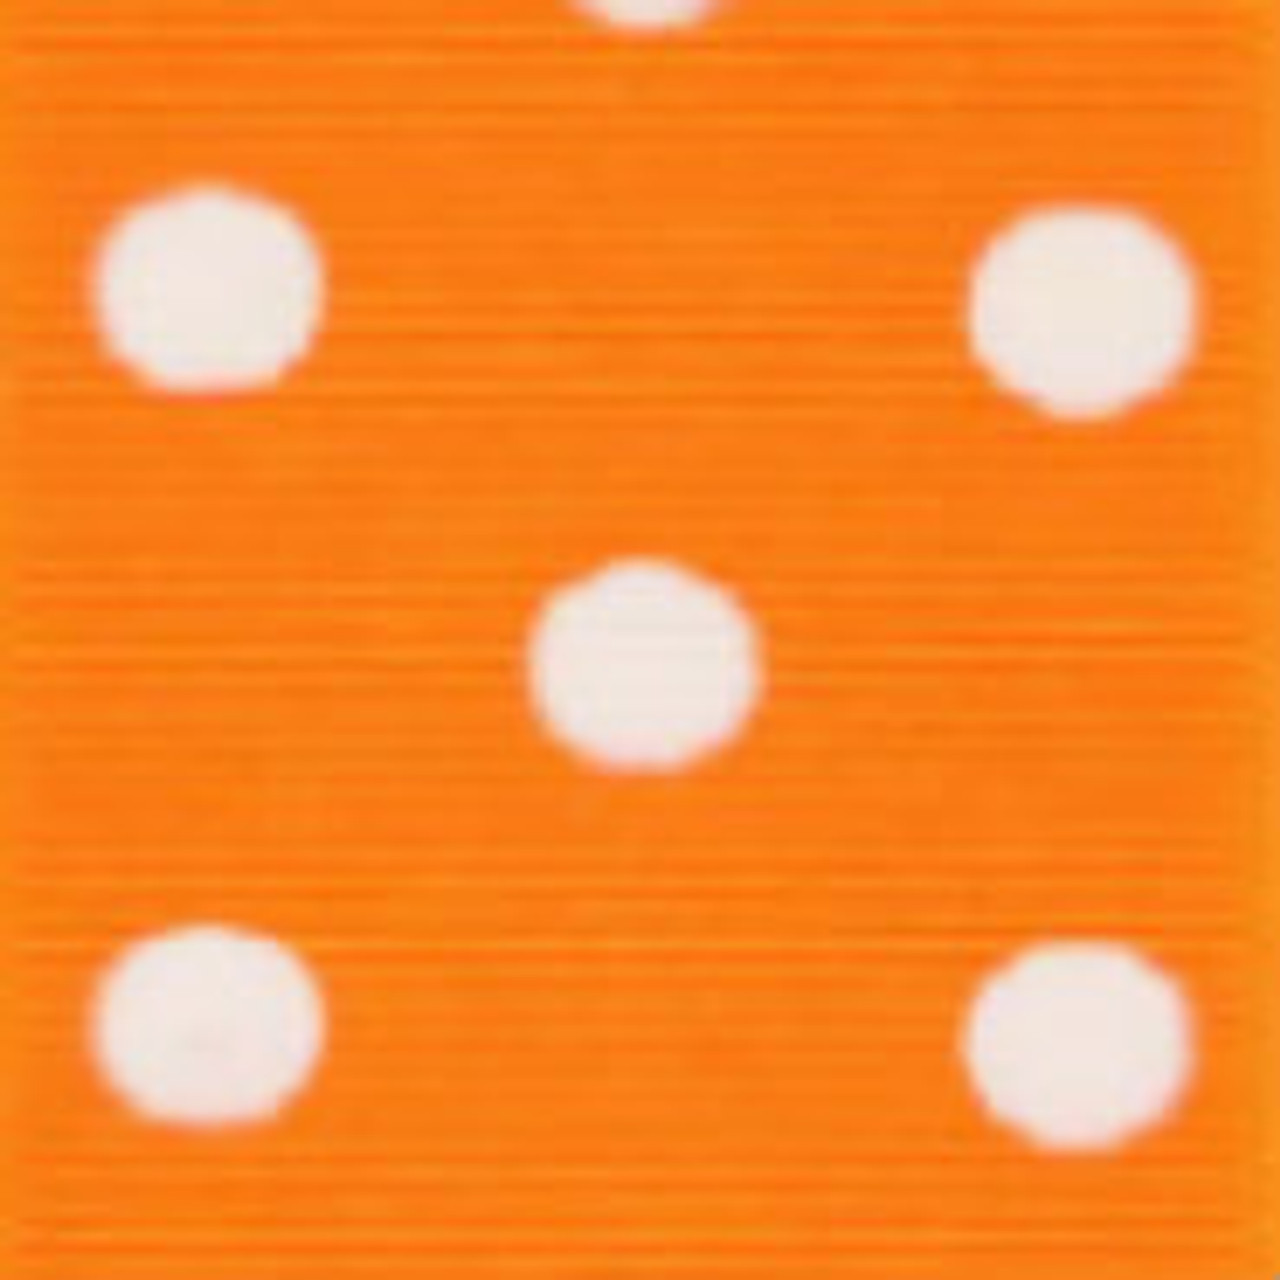 Torrid Orange & White Grosgrain Polka Dots